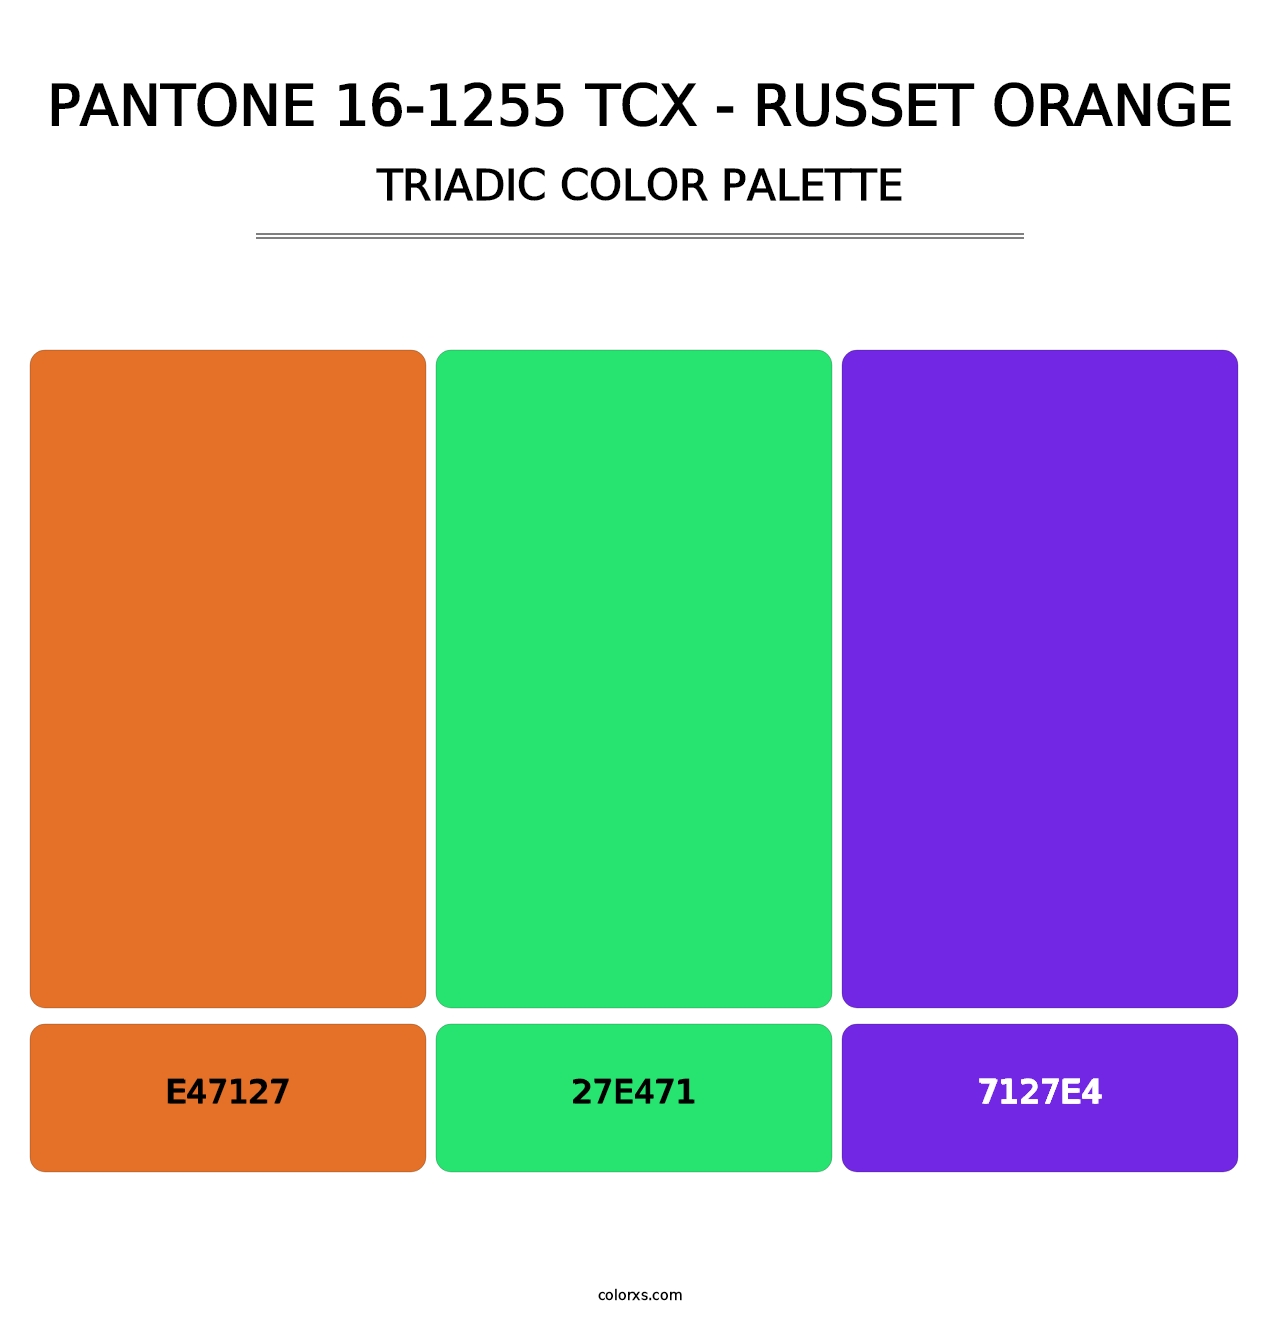 PANTONE 16-1255 TCX - Russet Orange - Triadic Color Palette